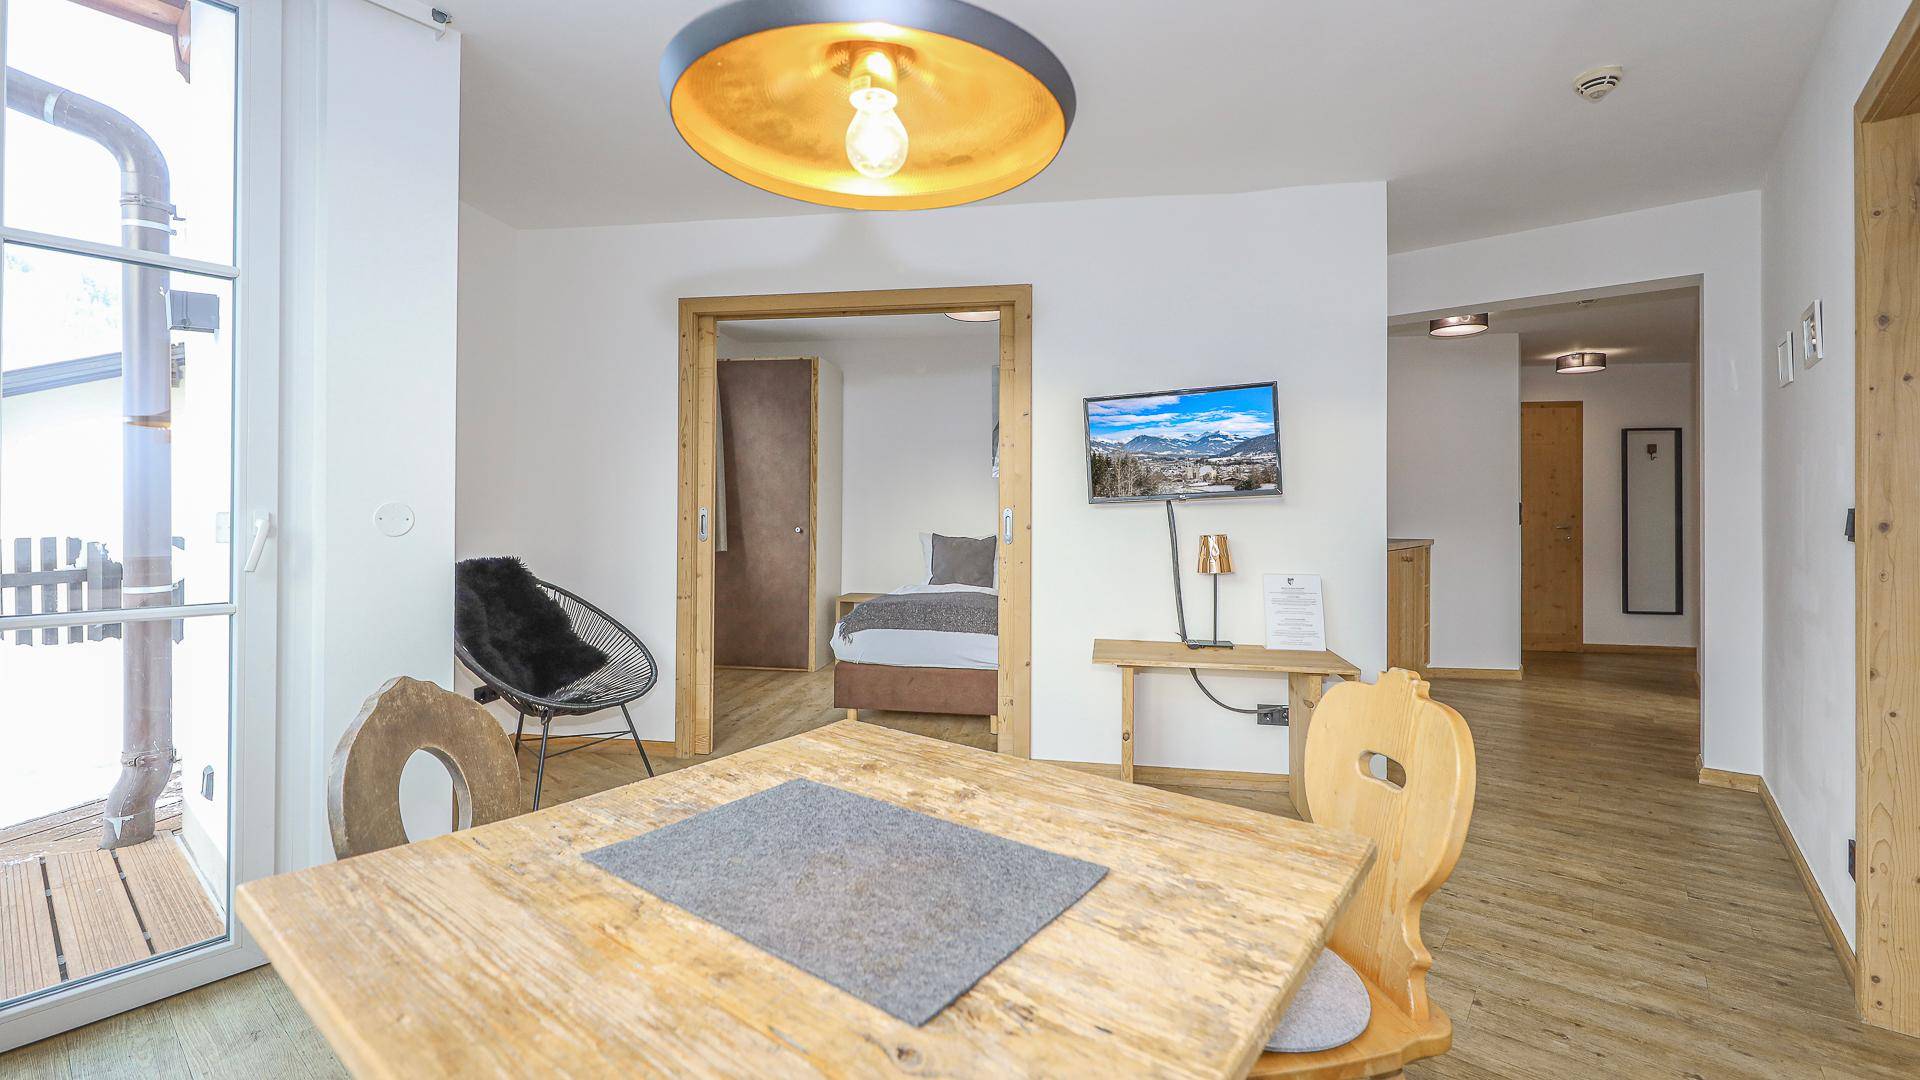 KITZIMMO-Hochwertiges Apartment mit touristischer Widmung kaufen - Immobilien Kitzbühel.